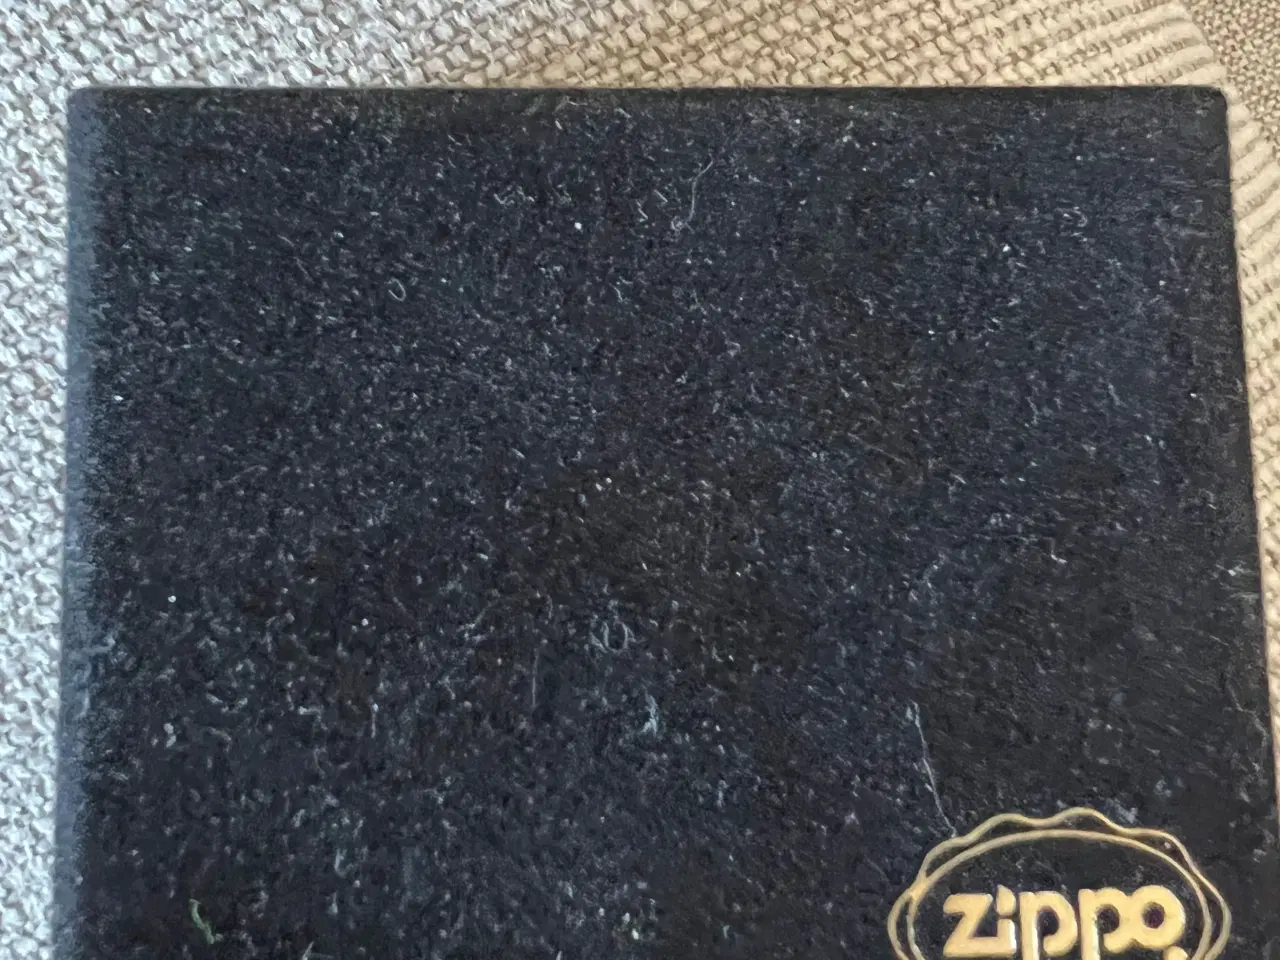 Billede 1 - Zippo lighter  har aldig været brugt  